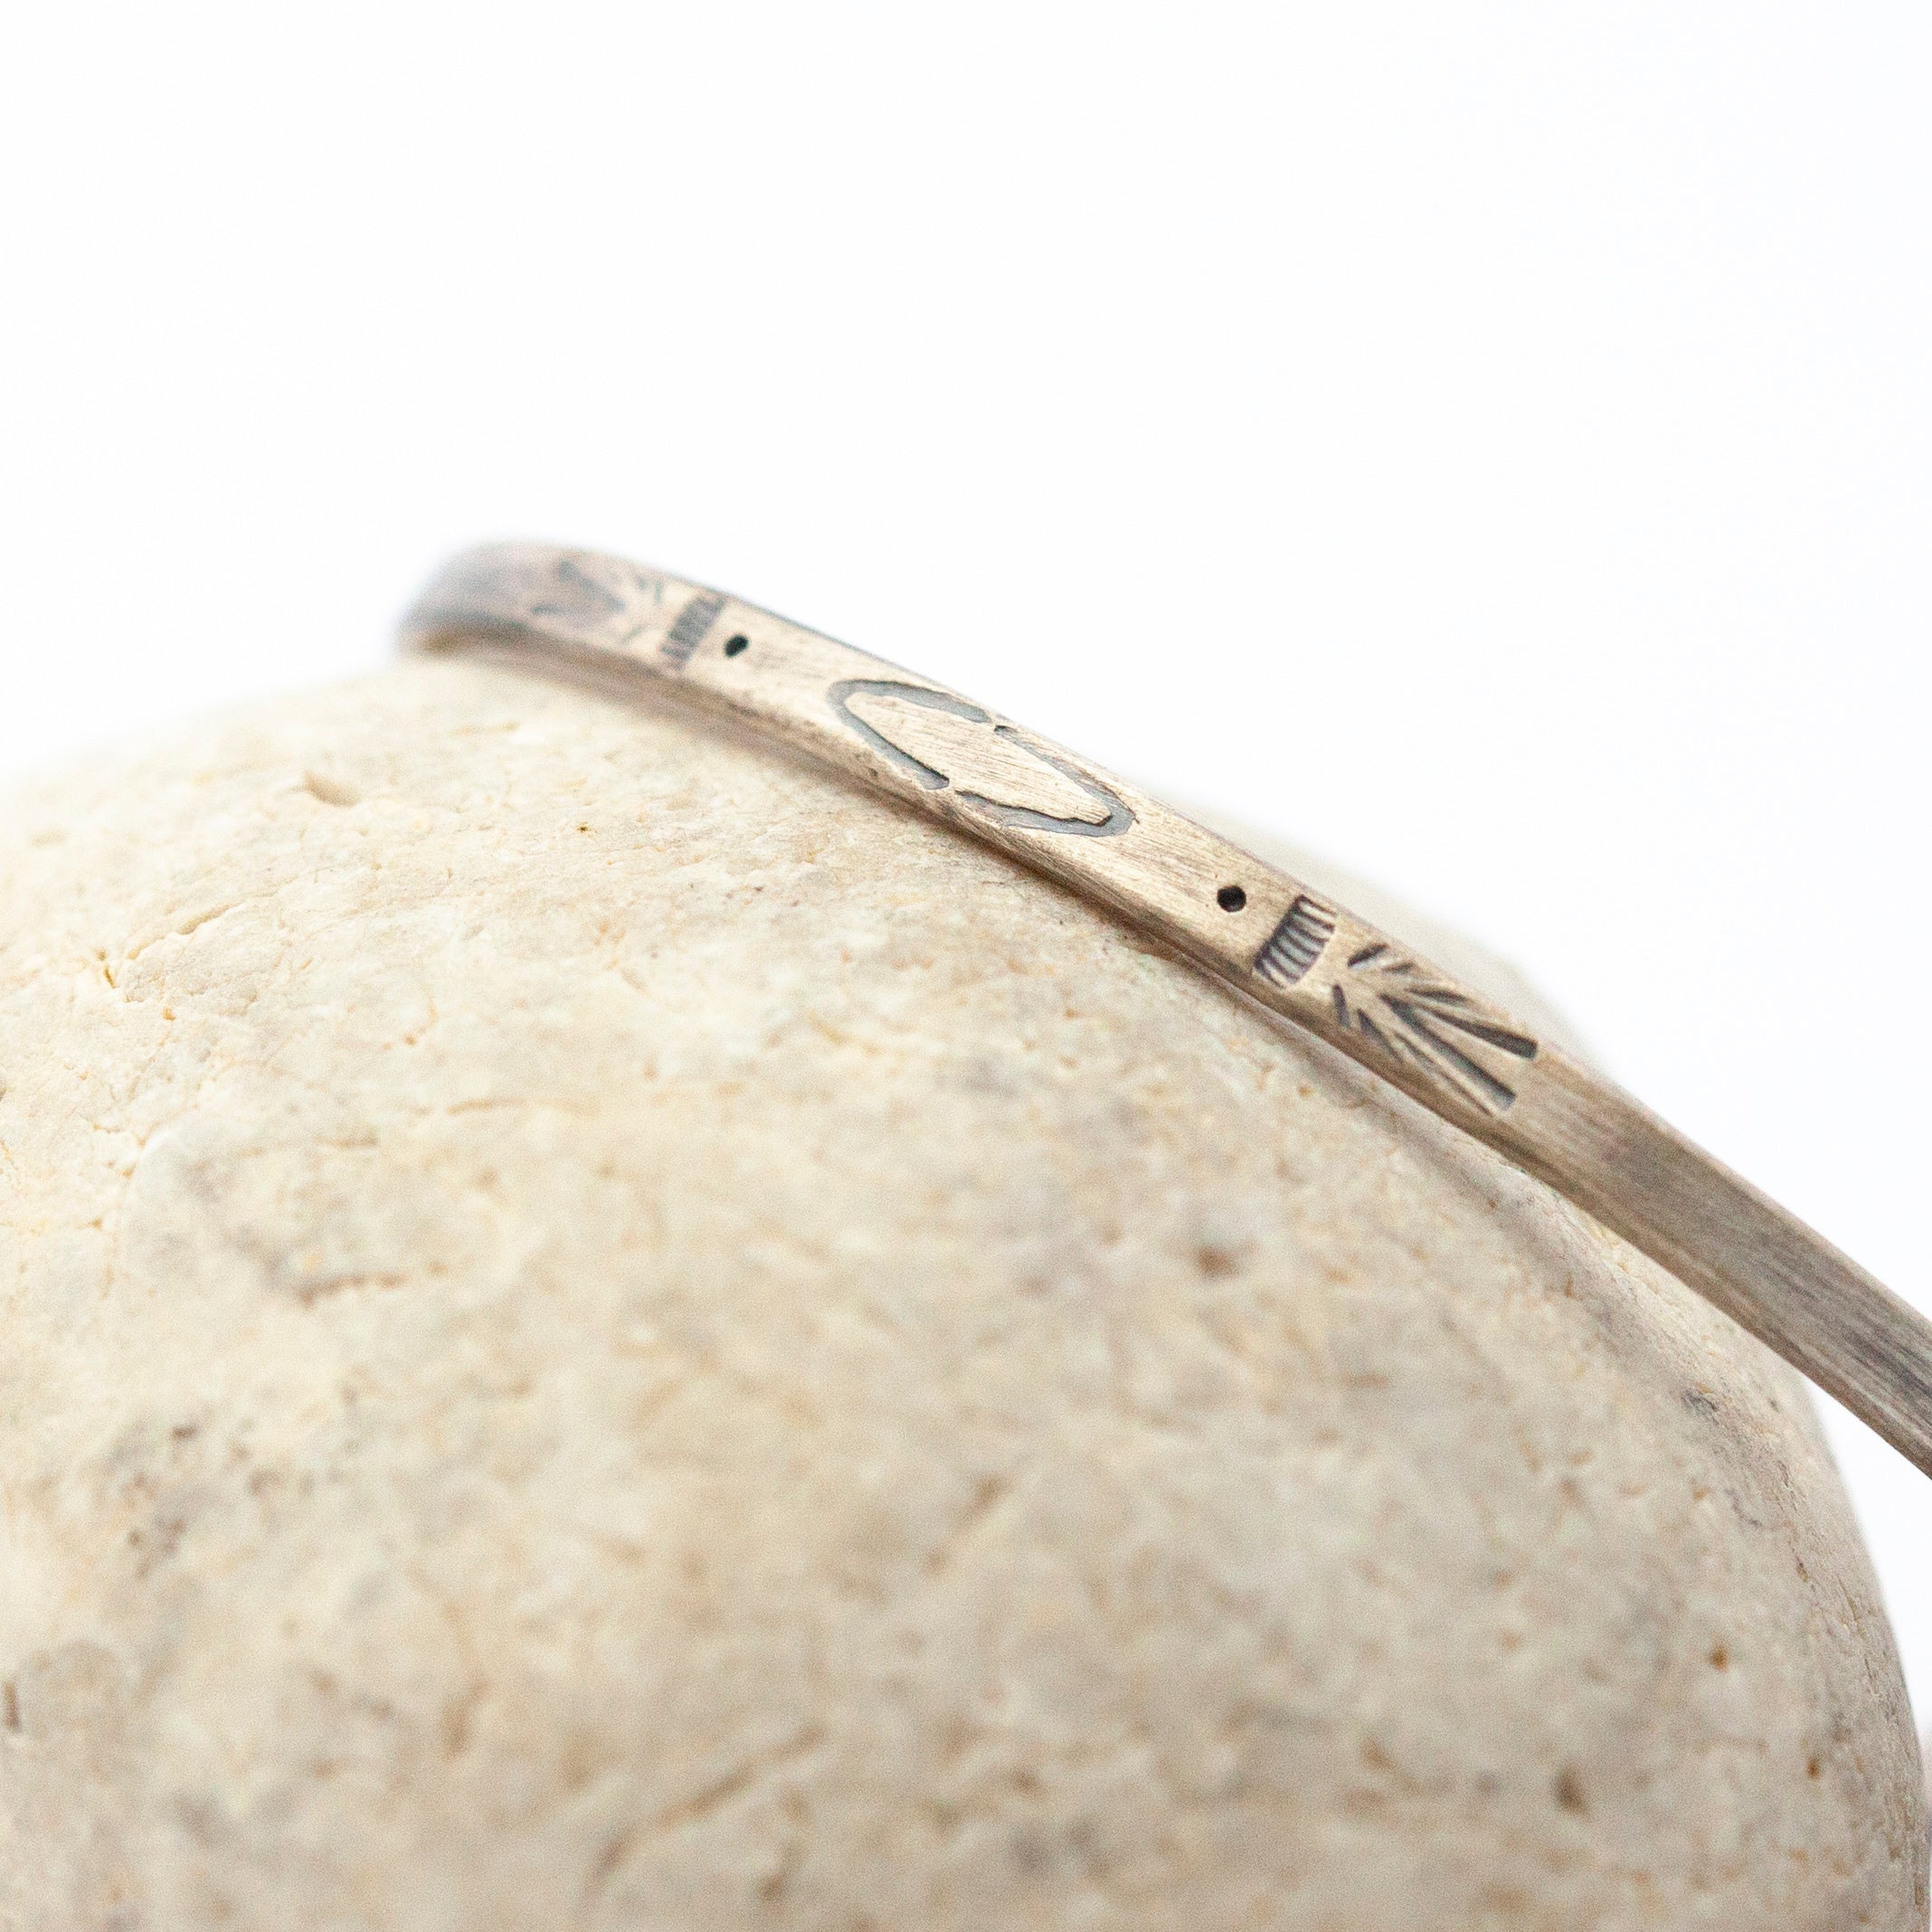 OOAK Ethnic bracelet in silver #5 • size 5,5cm (ready-to-ship)